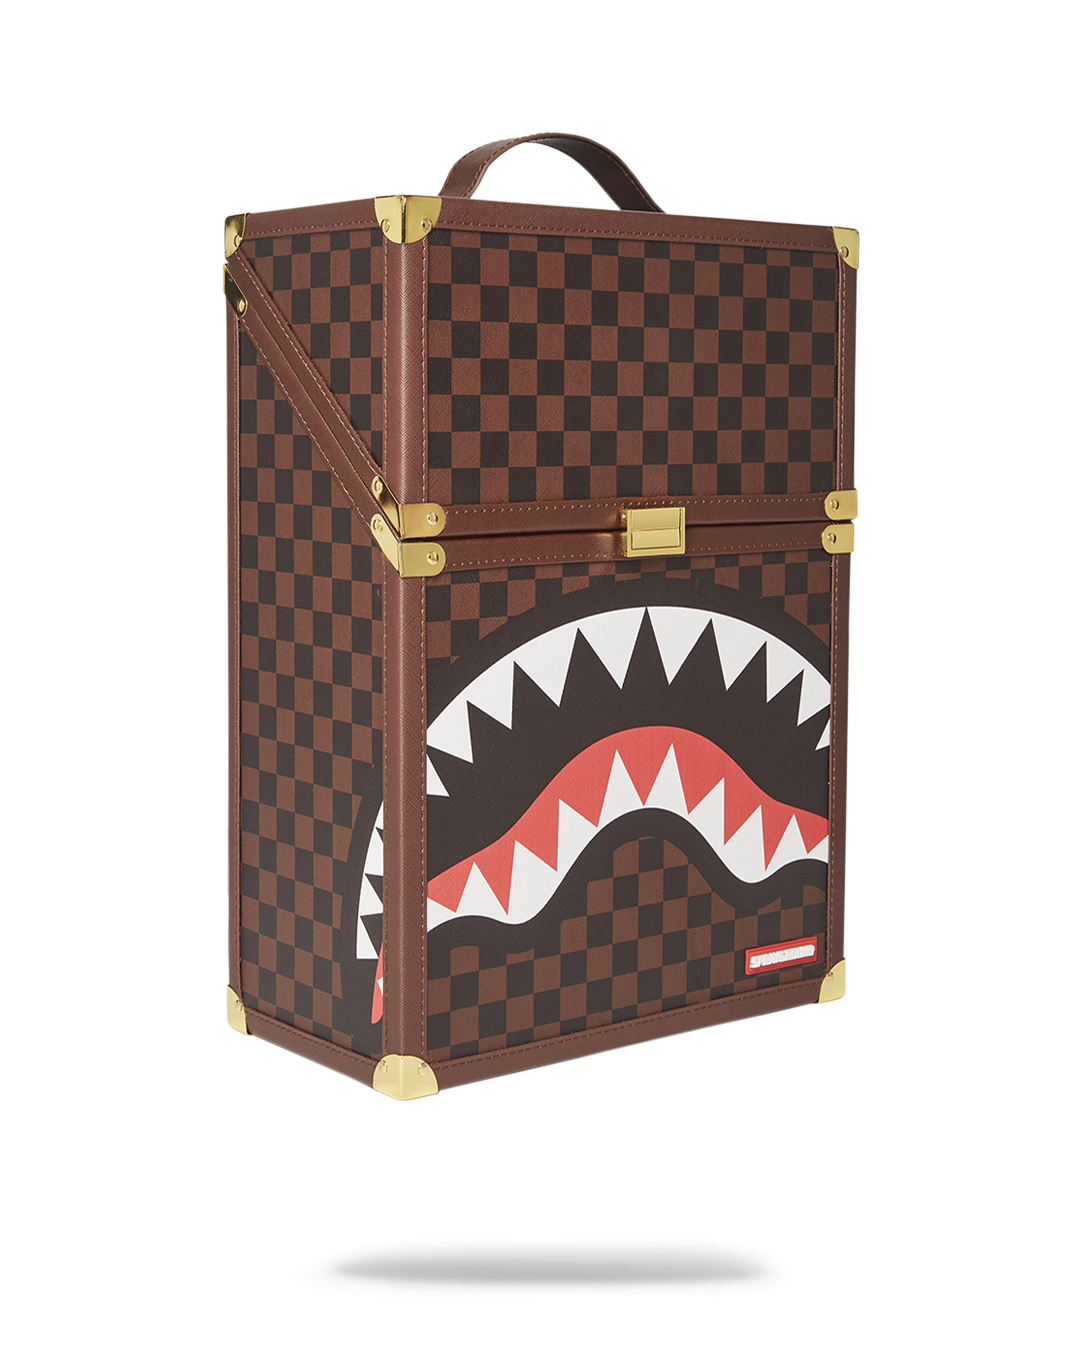 Sprayground Chaturanga Shark 1900 Backpack Like - Depop